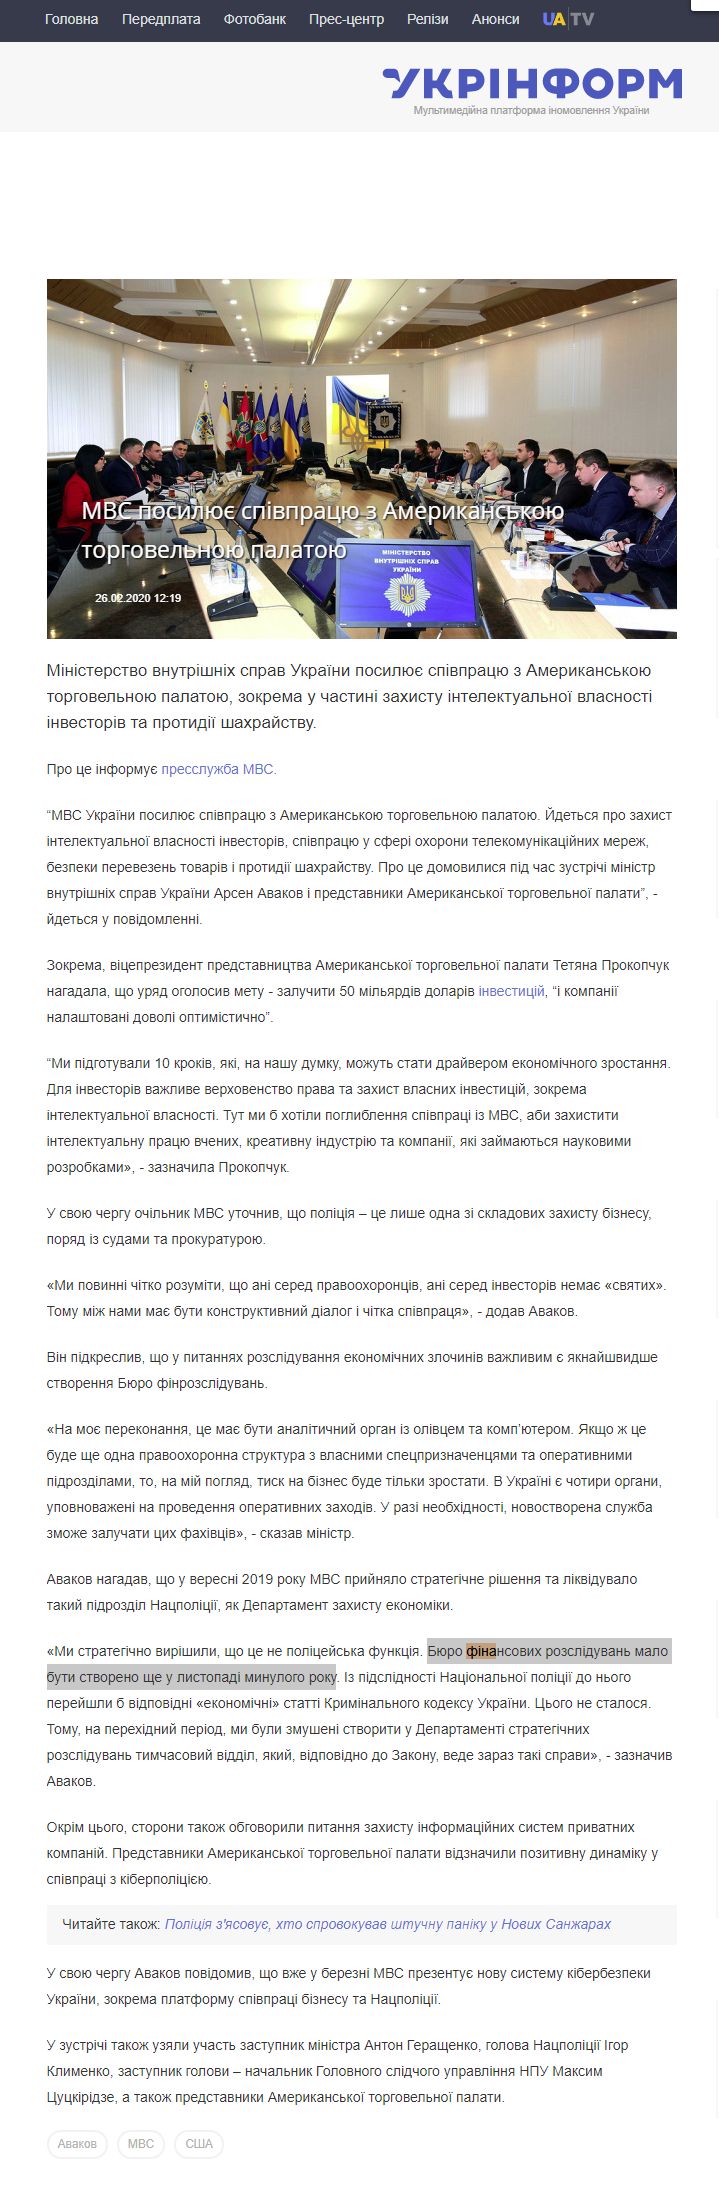 https://www.ukrinform.ua/rubric-economy/2884446-mvs-posilue-spivpracu-z-amerikanskou-torgovelnou-palatou.html